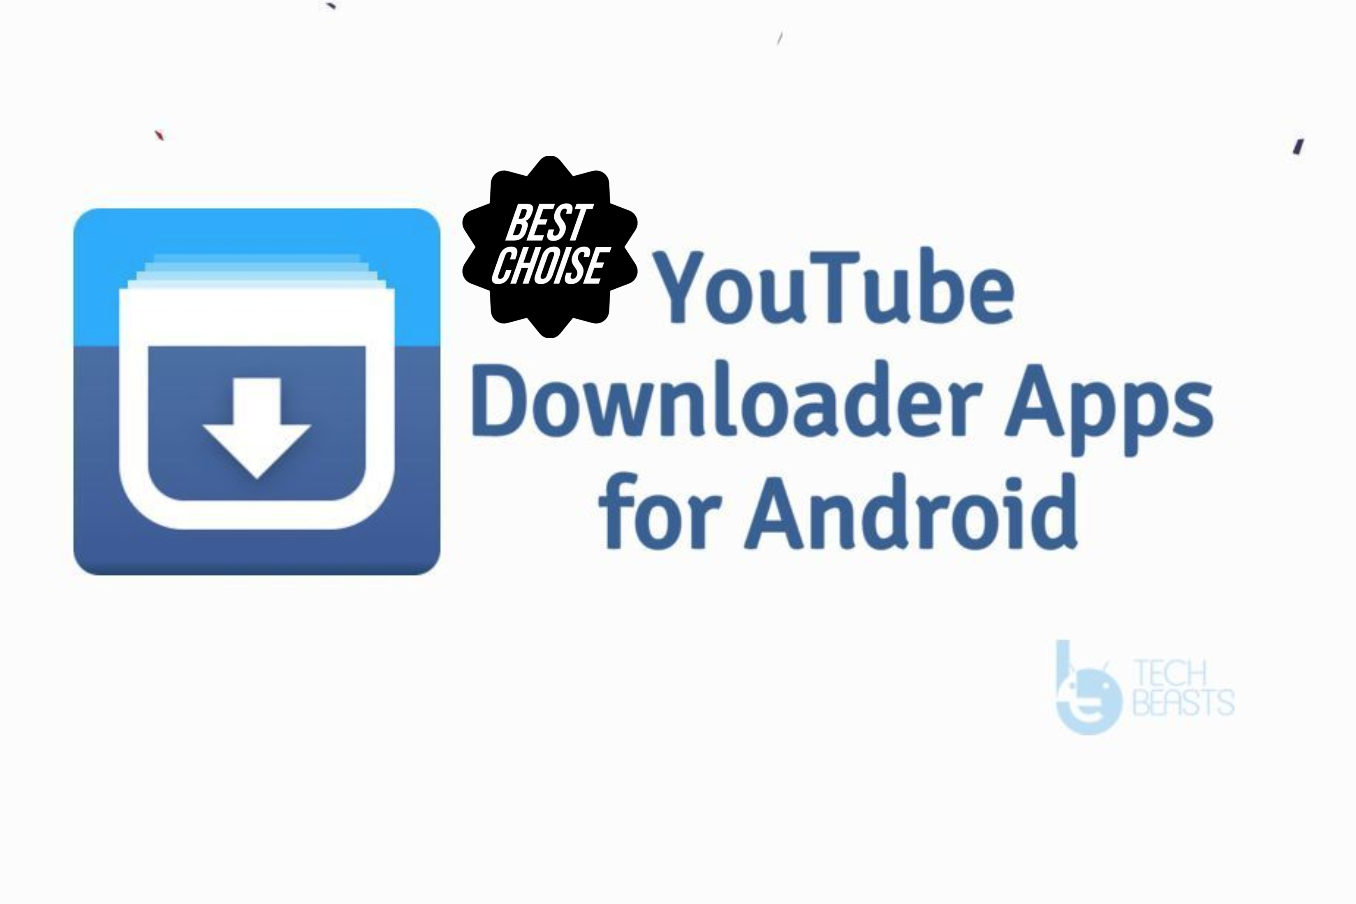 Downloader app